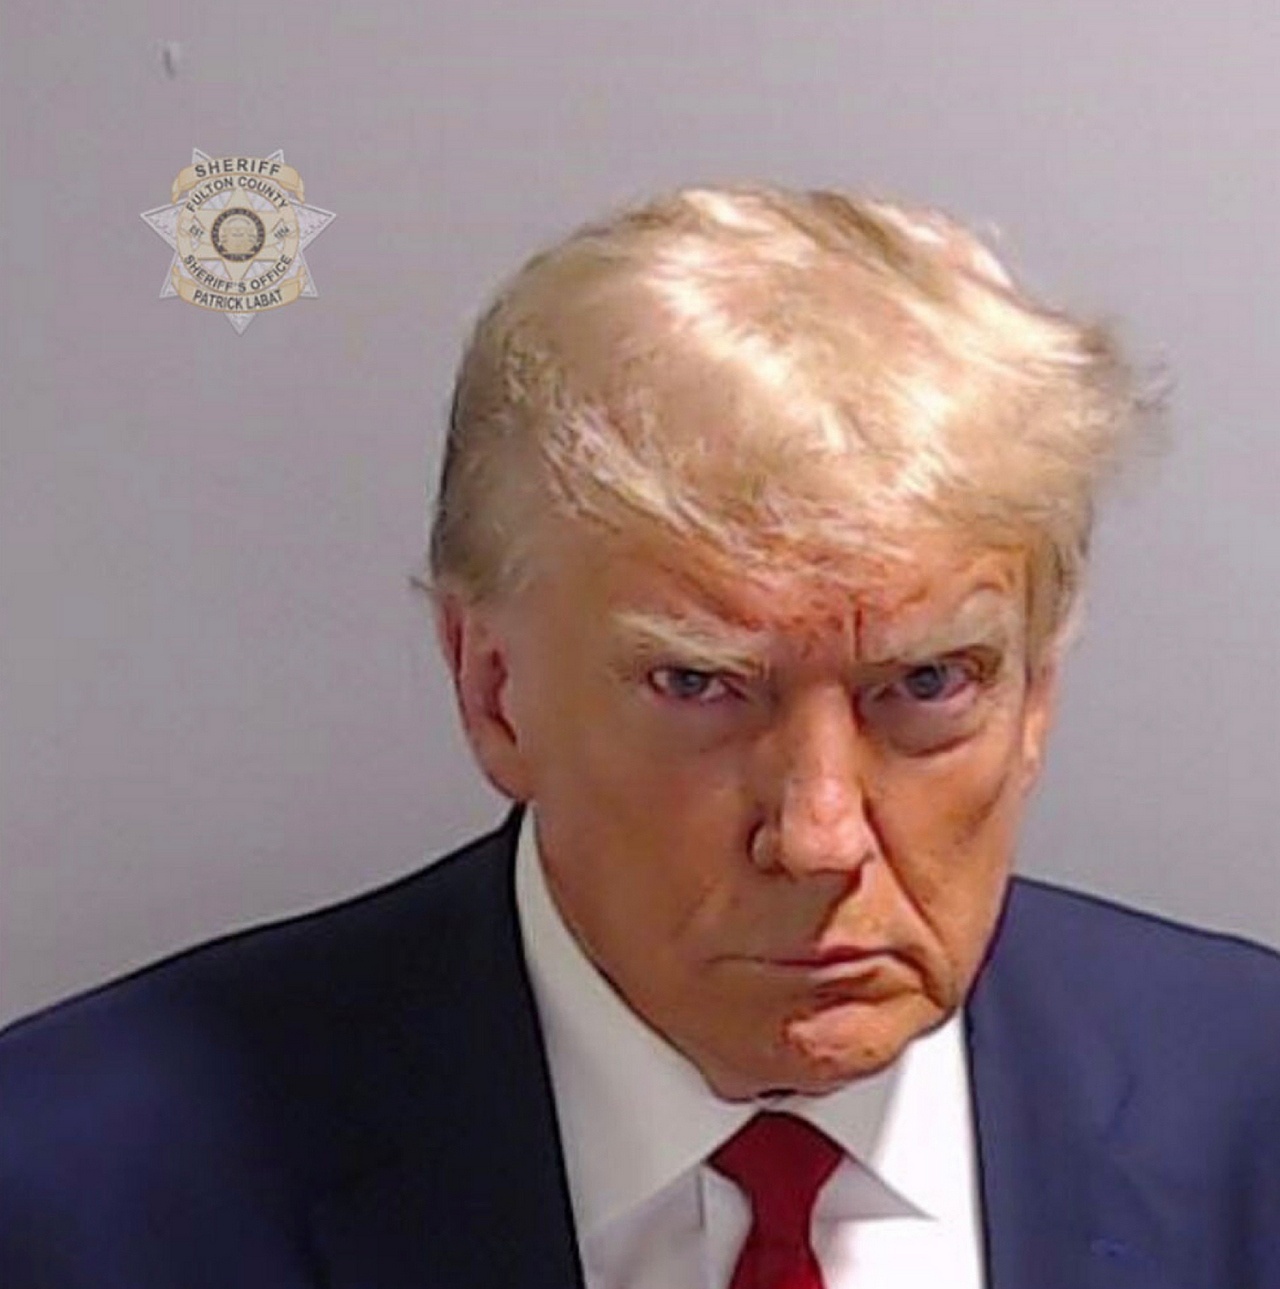 Фотография при оформлении Дональда Трампа, предоставленная офисом шерифа округа Фултон, моментально стала мемом.